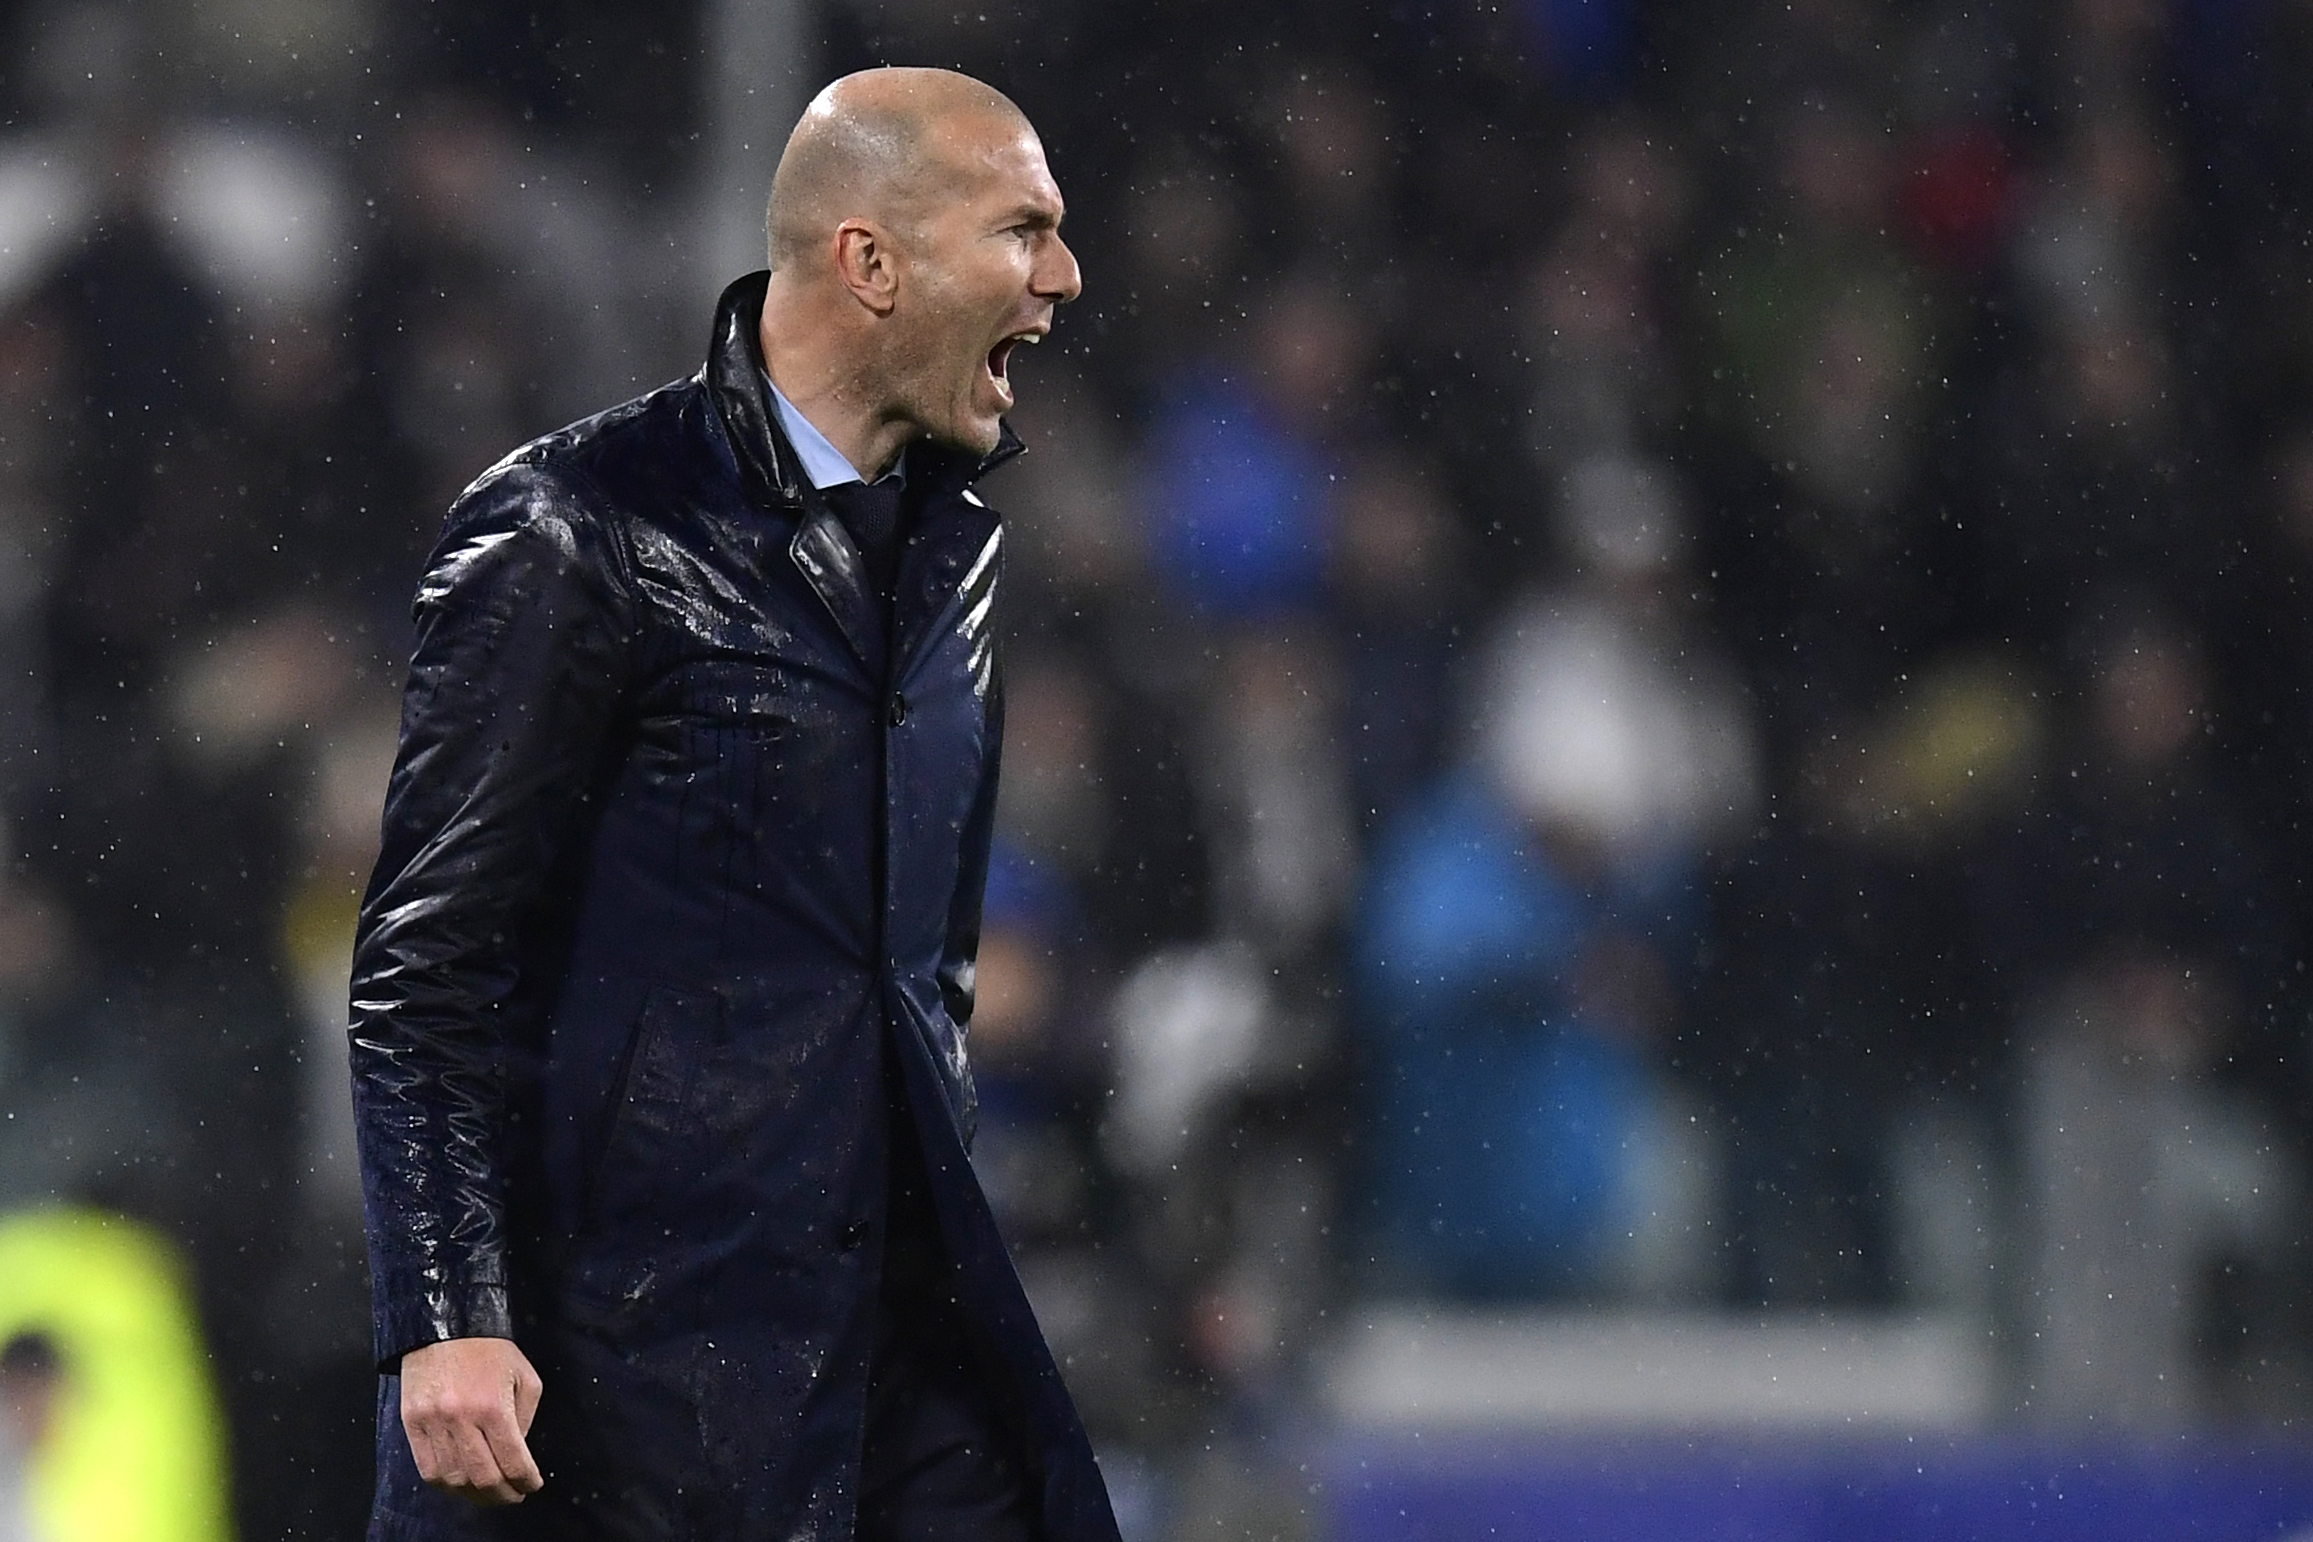 ESQUENTOU - Zinedine Zidane pode estar de saída do comando do Real Madrid no final da temporada 2020/21, pois o clube merengue não cumpriu com as promessas do treinador de reforçar o elenco.